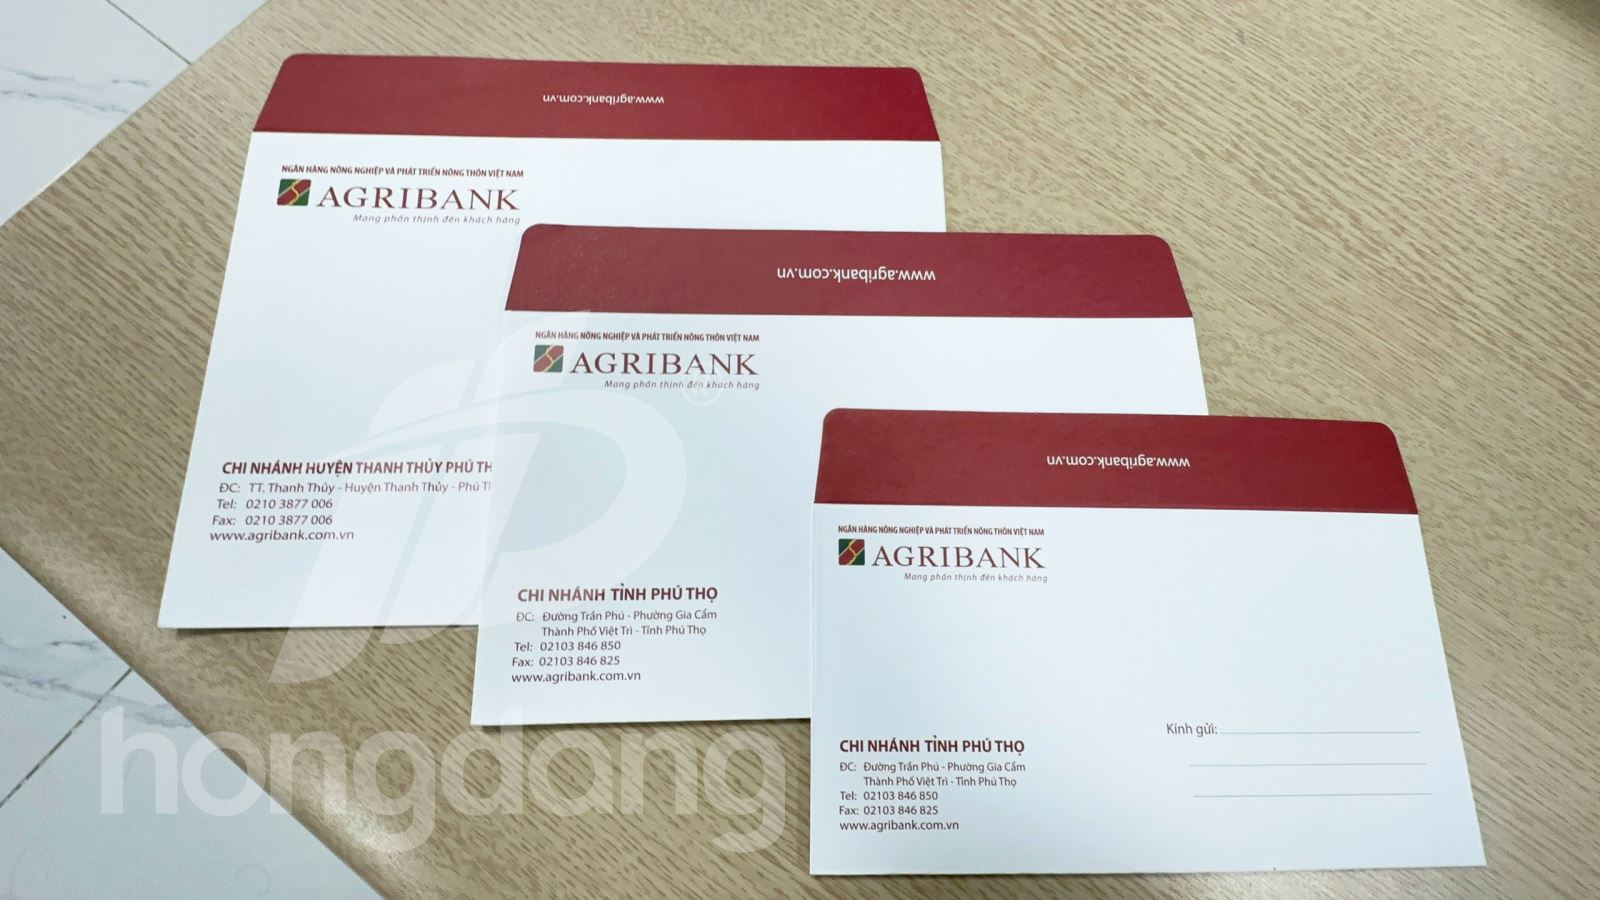 Mẫu phong bì ngân hàng Agribank